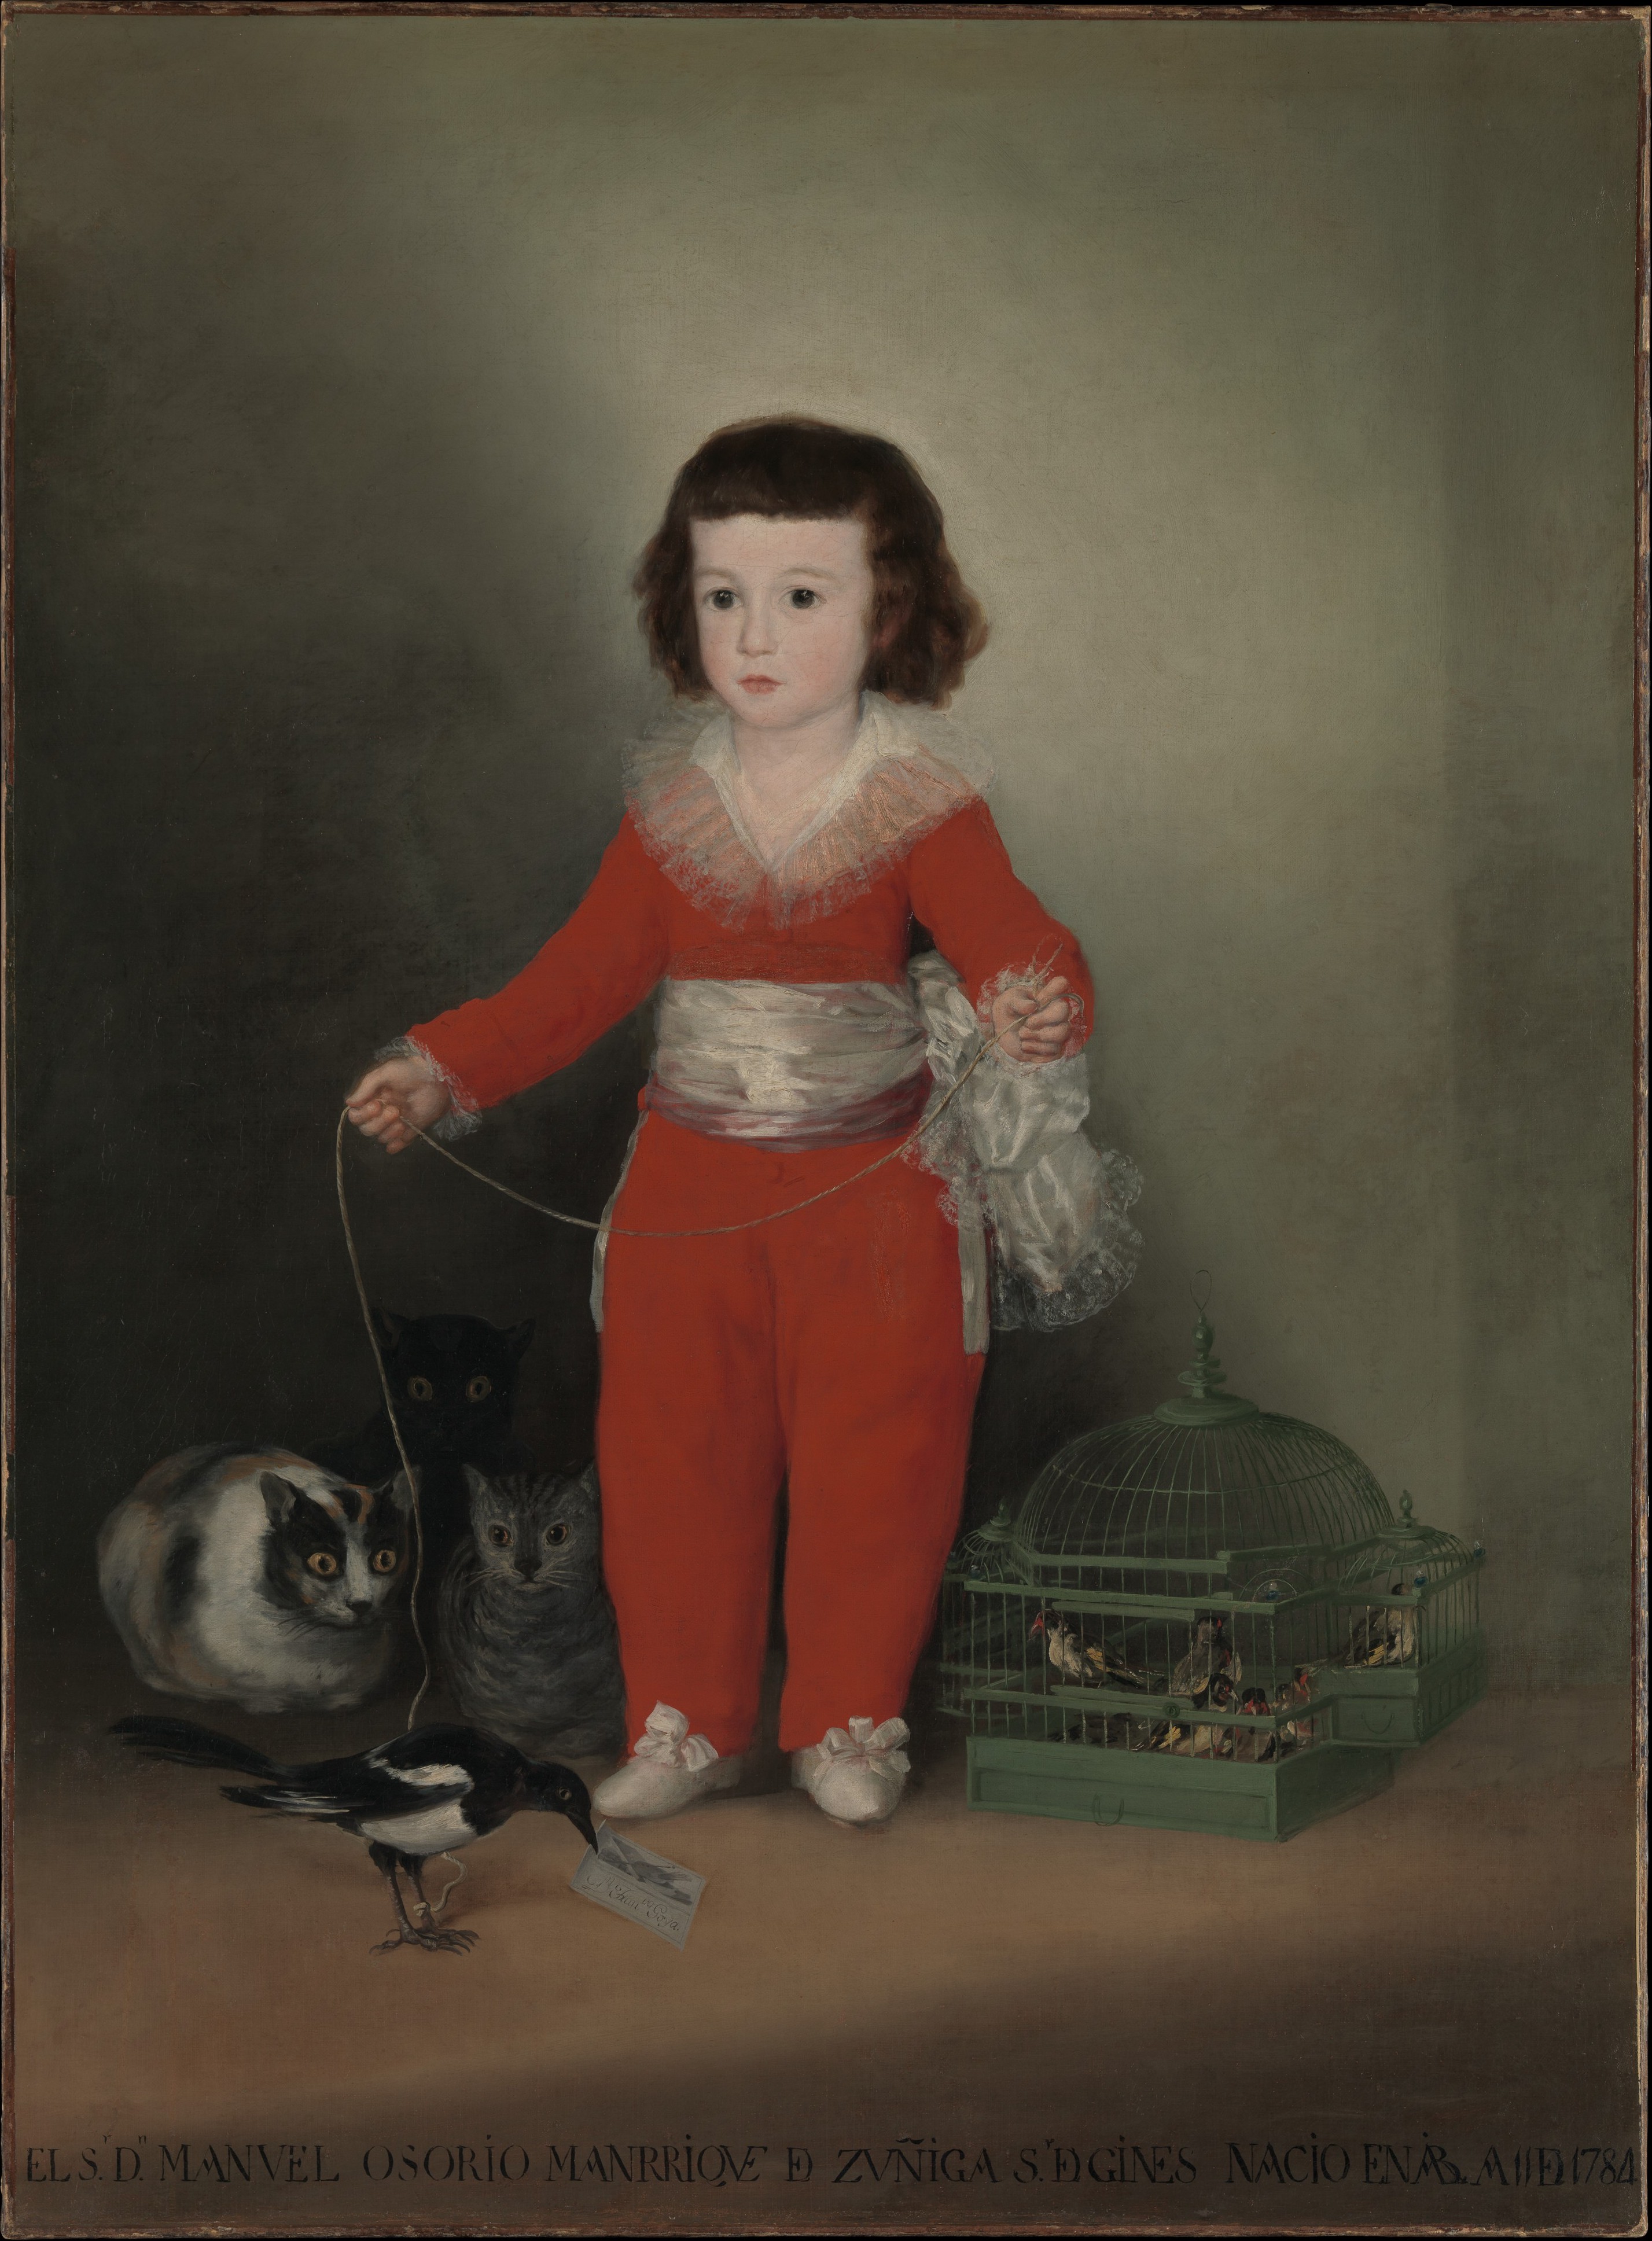 Мануел Осорио Манрике де Зунига by Francisco Goya - 1787–88. - 127 x 101.6 cm 